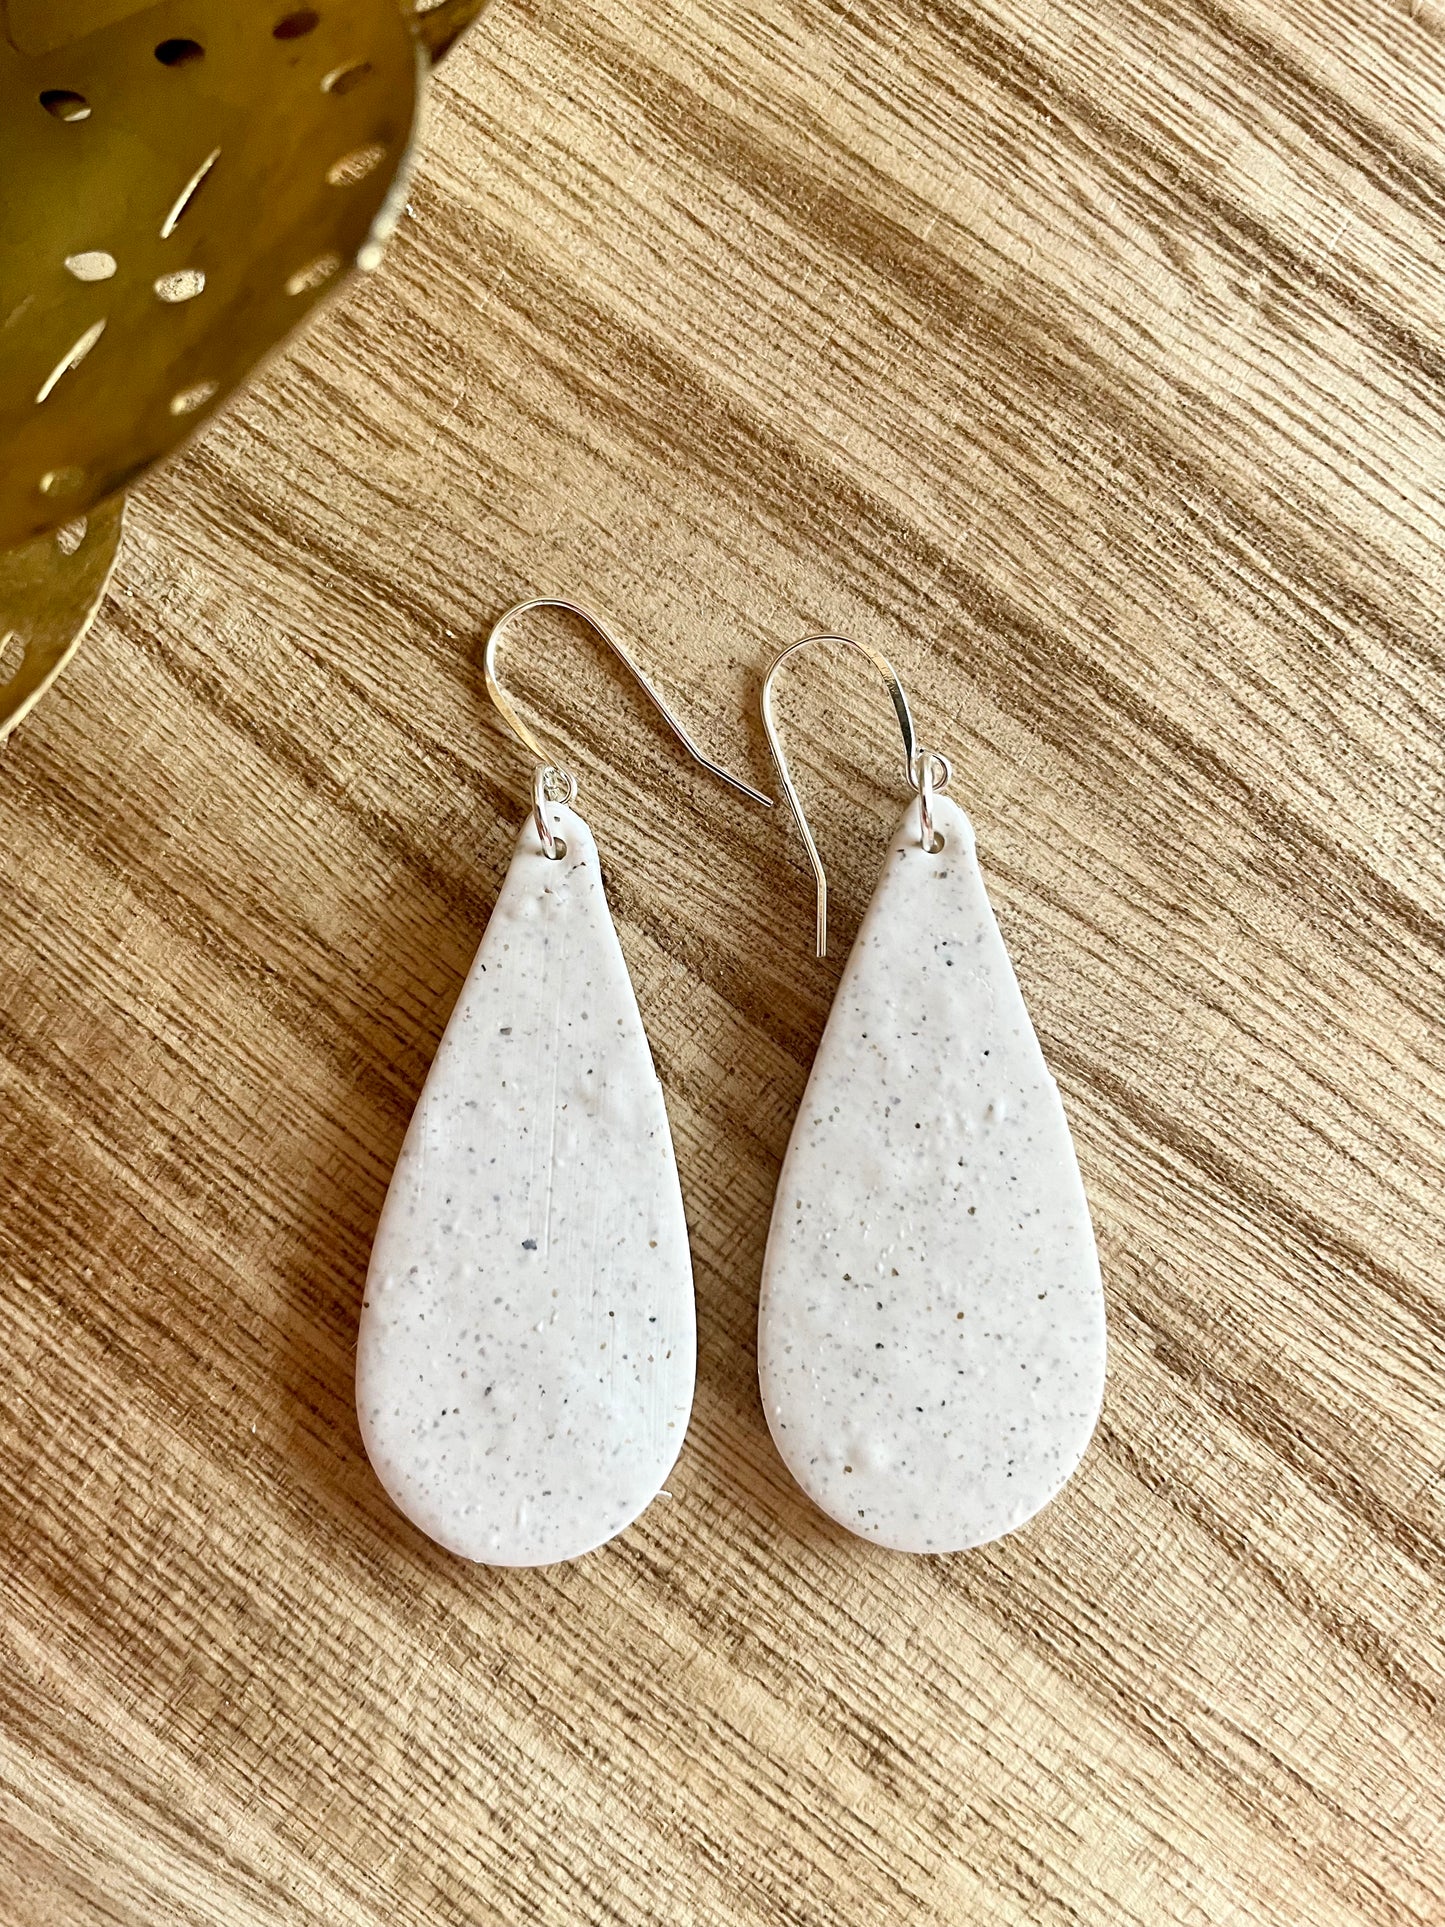 clay earrings | white granite teardrop